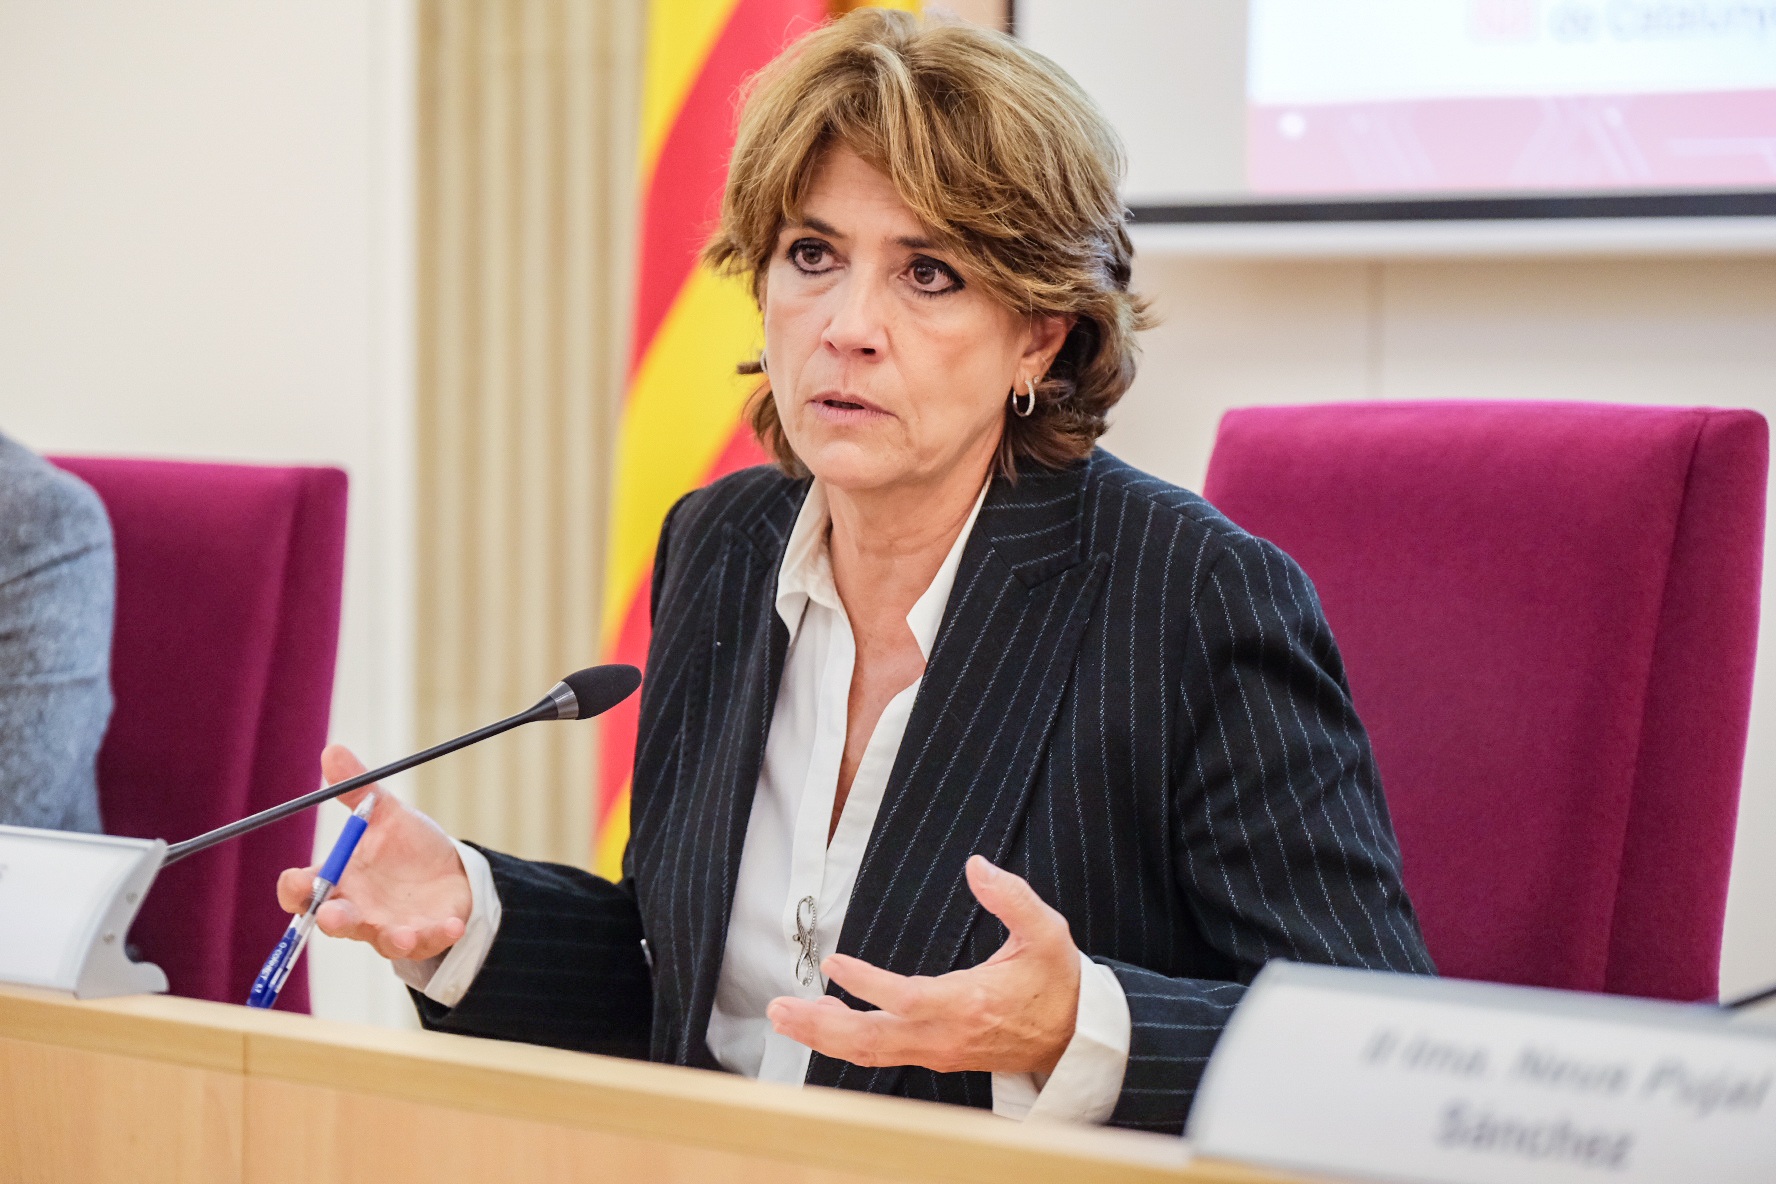 La fiscal Dolores Delgado afirma que "si España no da respuesta a la memoria, vulnera derechos humanos"